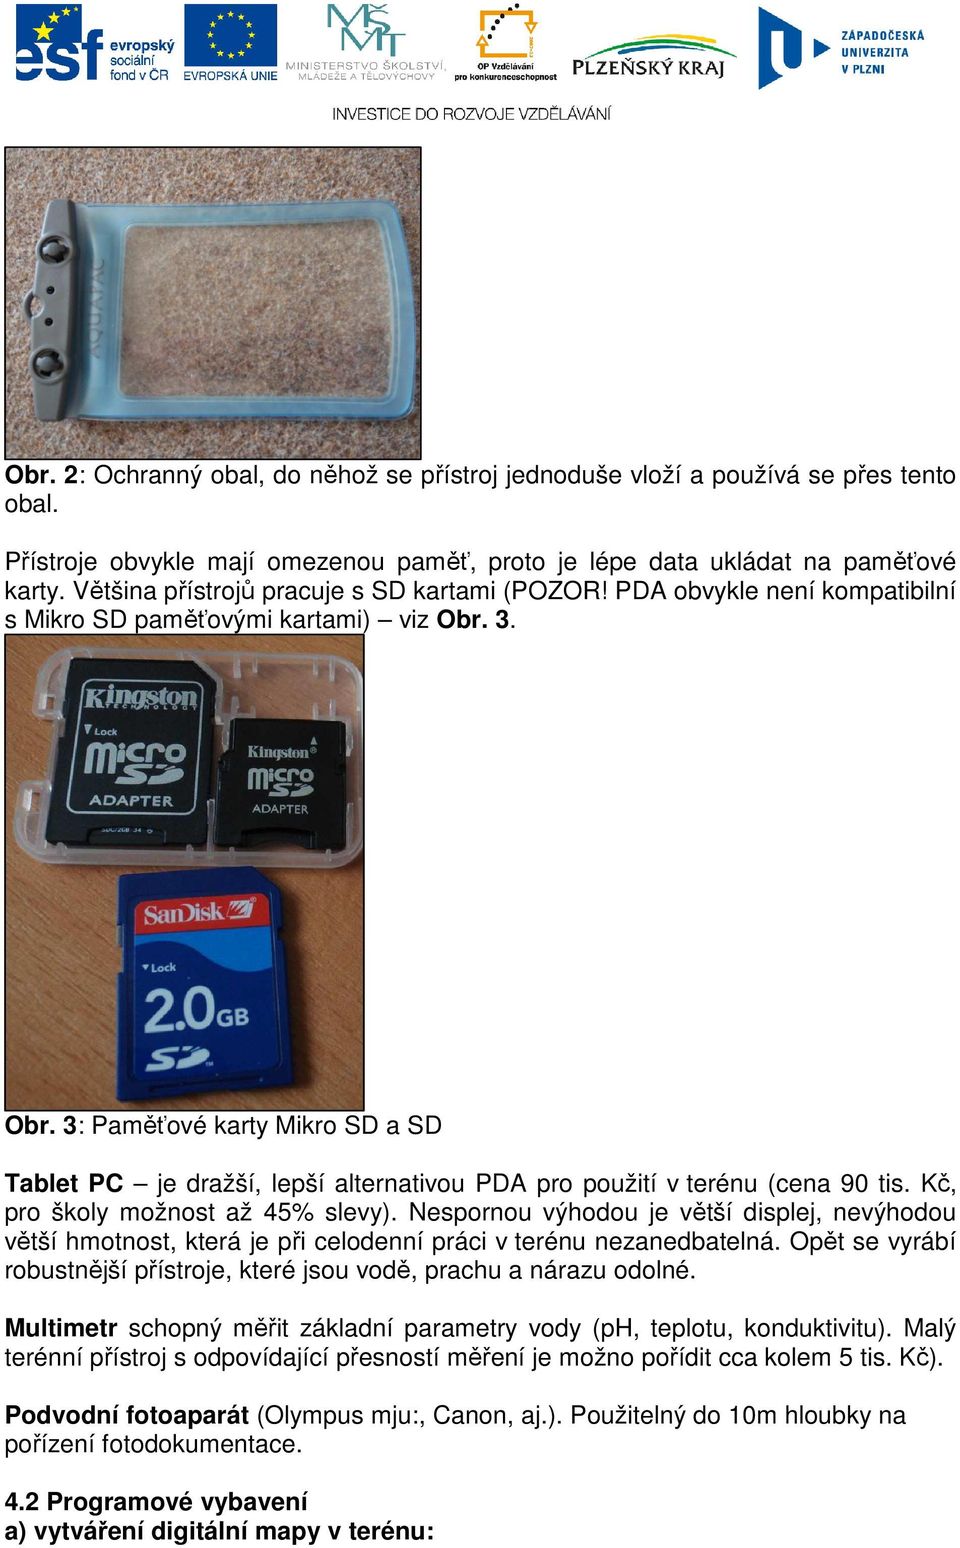 3. Obr. 3: Paměťové karty Mikro SD a SD Tablet PC je dražší, lepší alternativou PDA pro použití v terénu (cena 90 tis. Kč, pro školy možnost až 45% slevy).